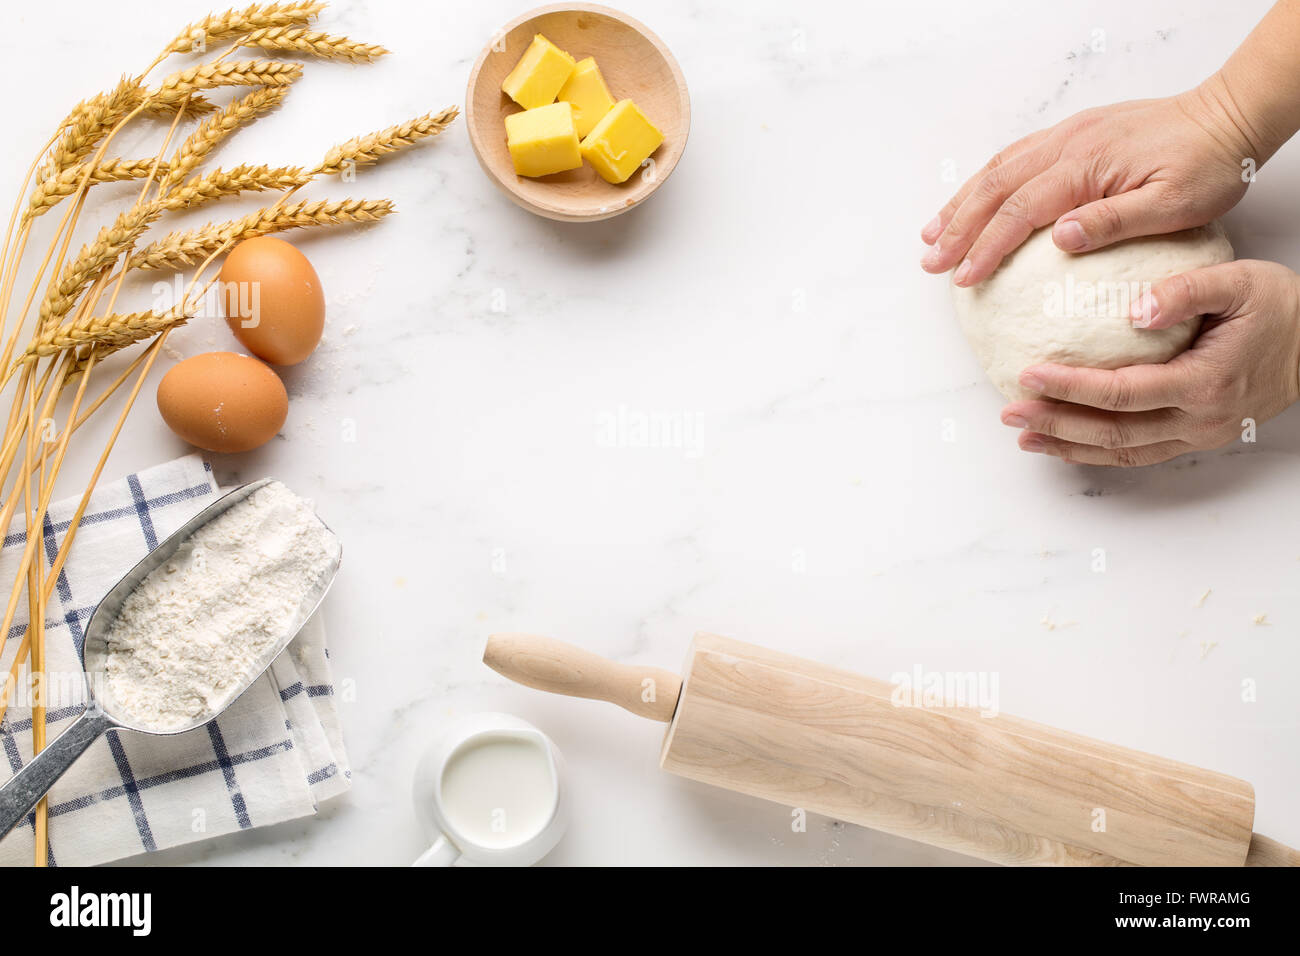 La cuisson des gâteaux, recette de pâte à modeler ingrédients (oeufs, farine, lait, beurre, sucre) sur le tableau blanc. Banque D'Images